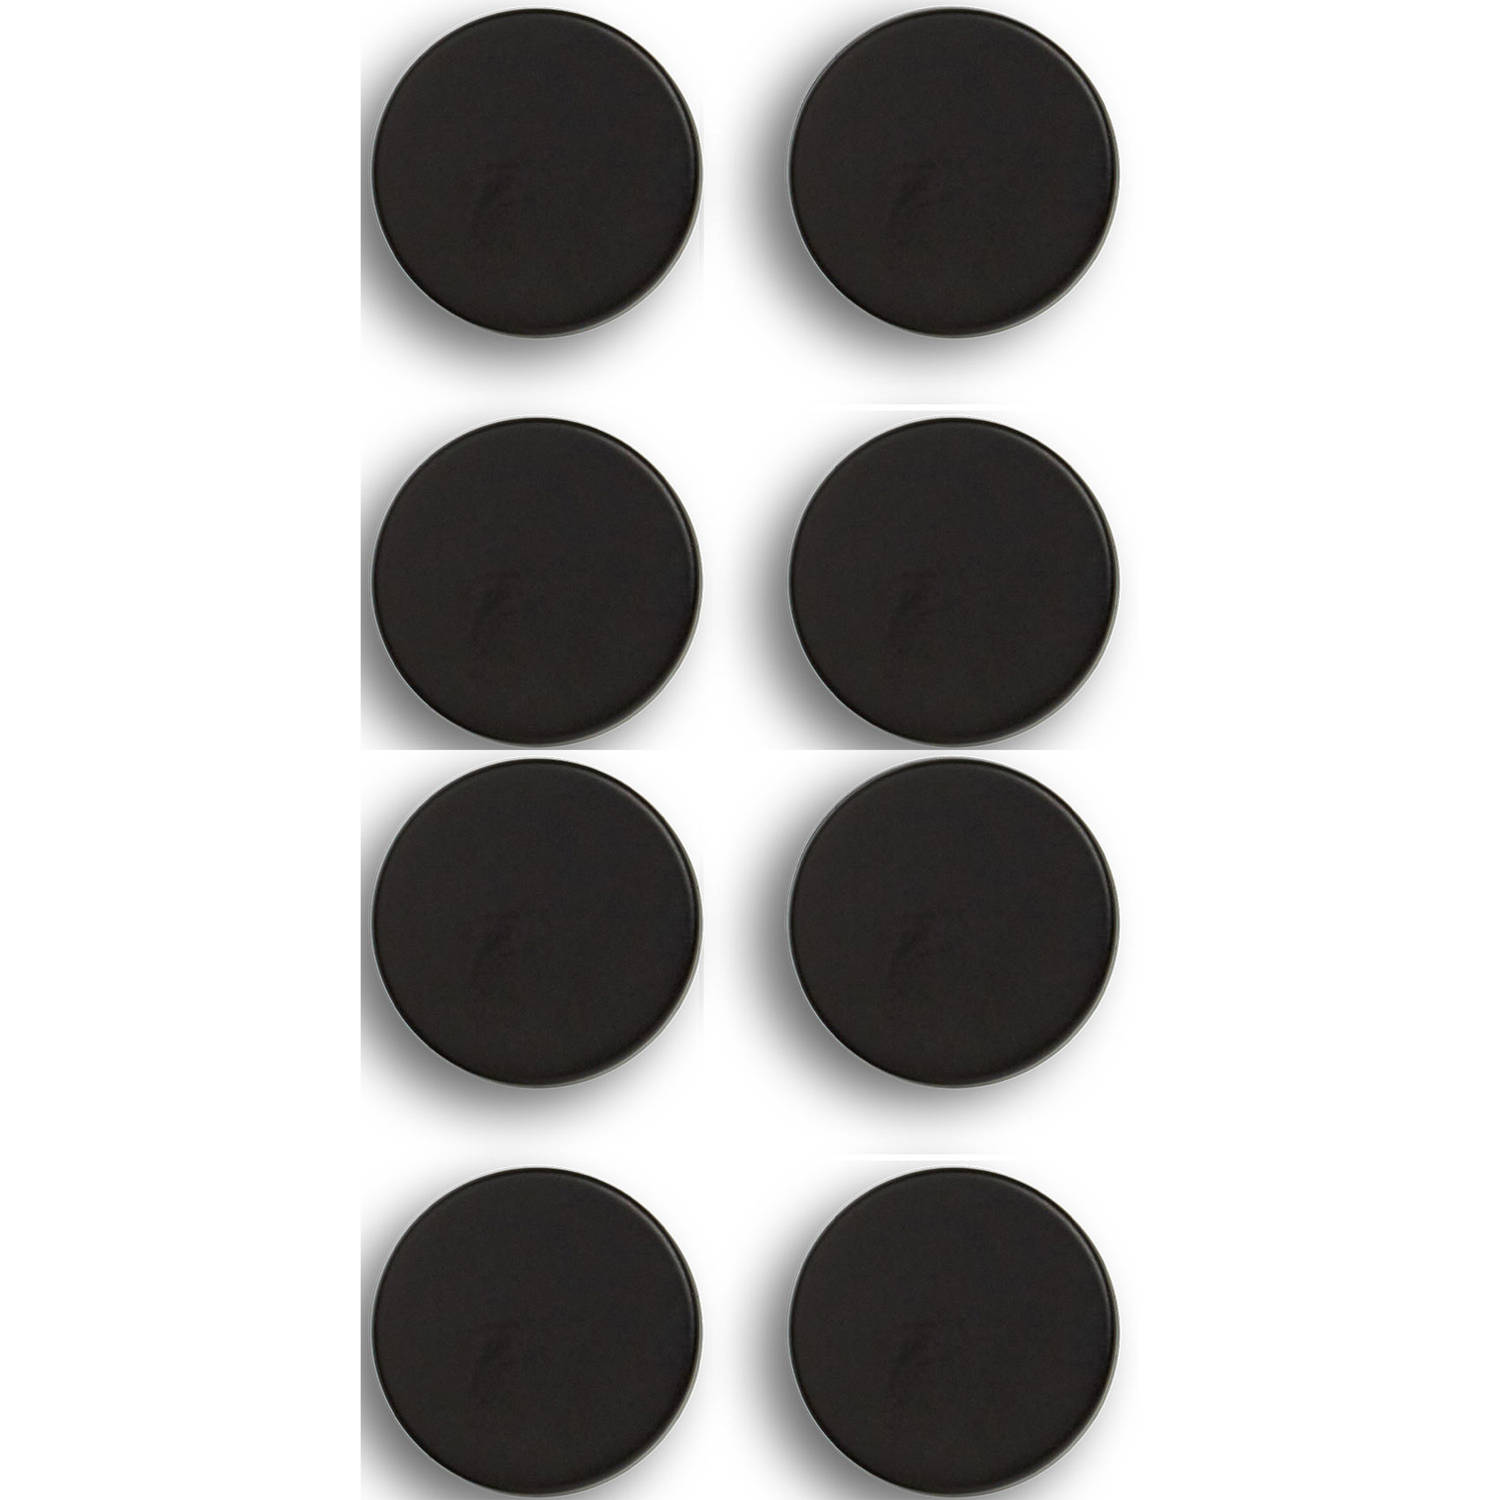 Whiteboard-koelkast magneten extra sterk 8x mat zwart 2 cm Magneten